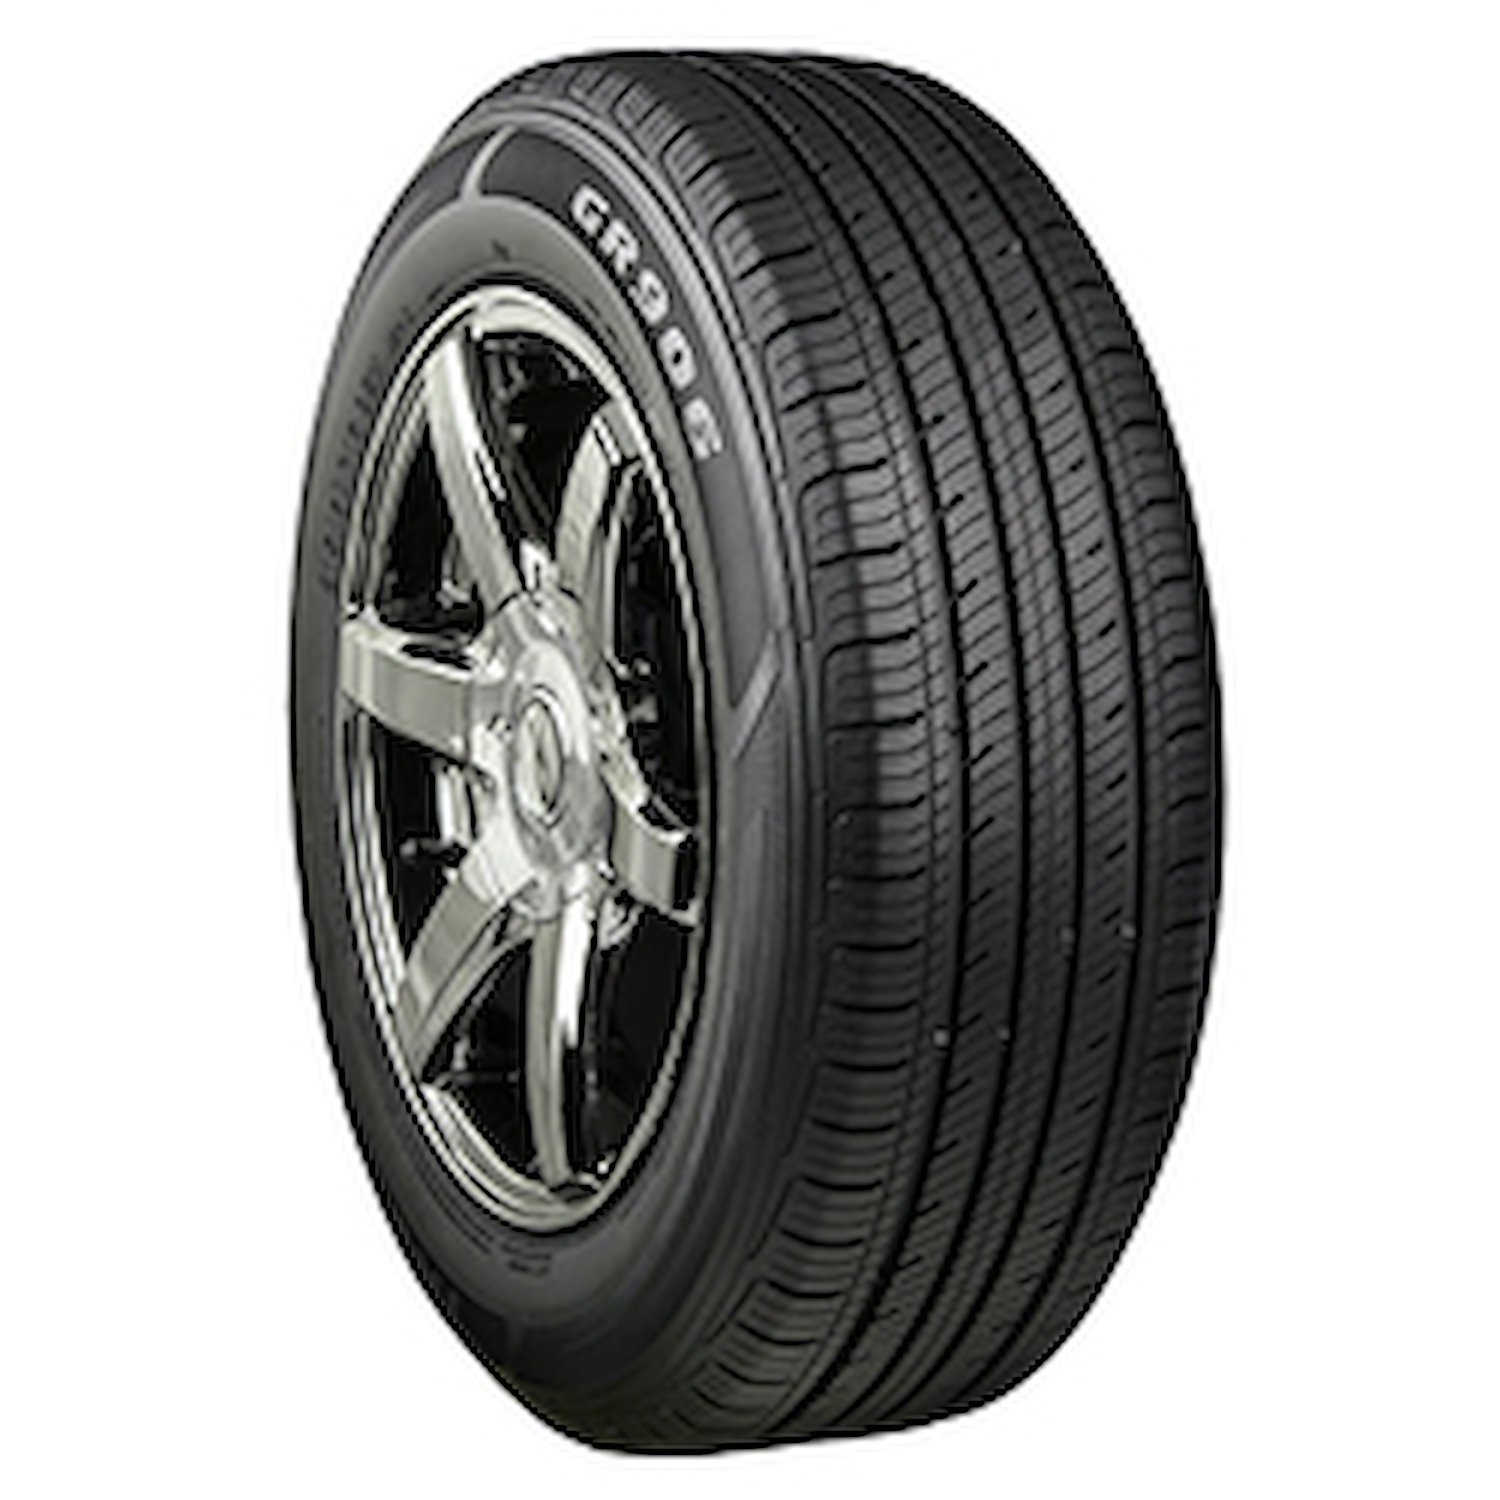 GR906 Tire, 235/65R16 103H